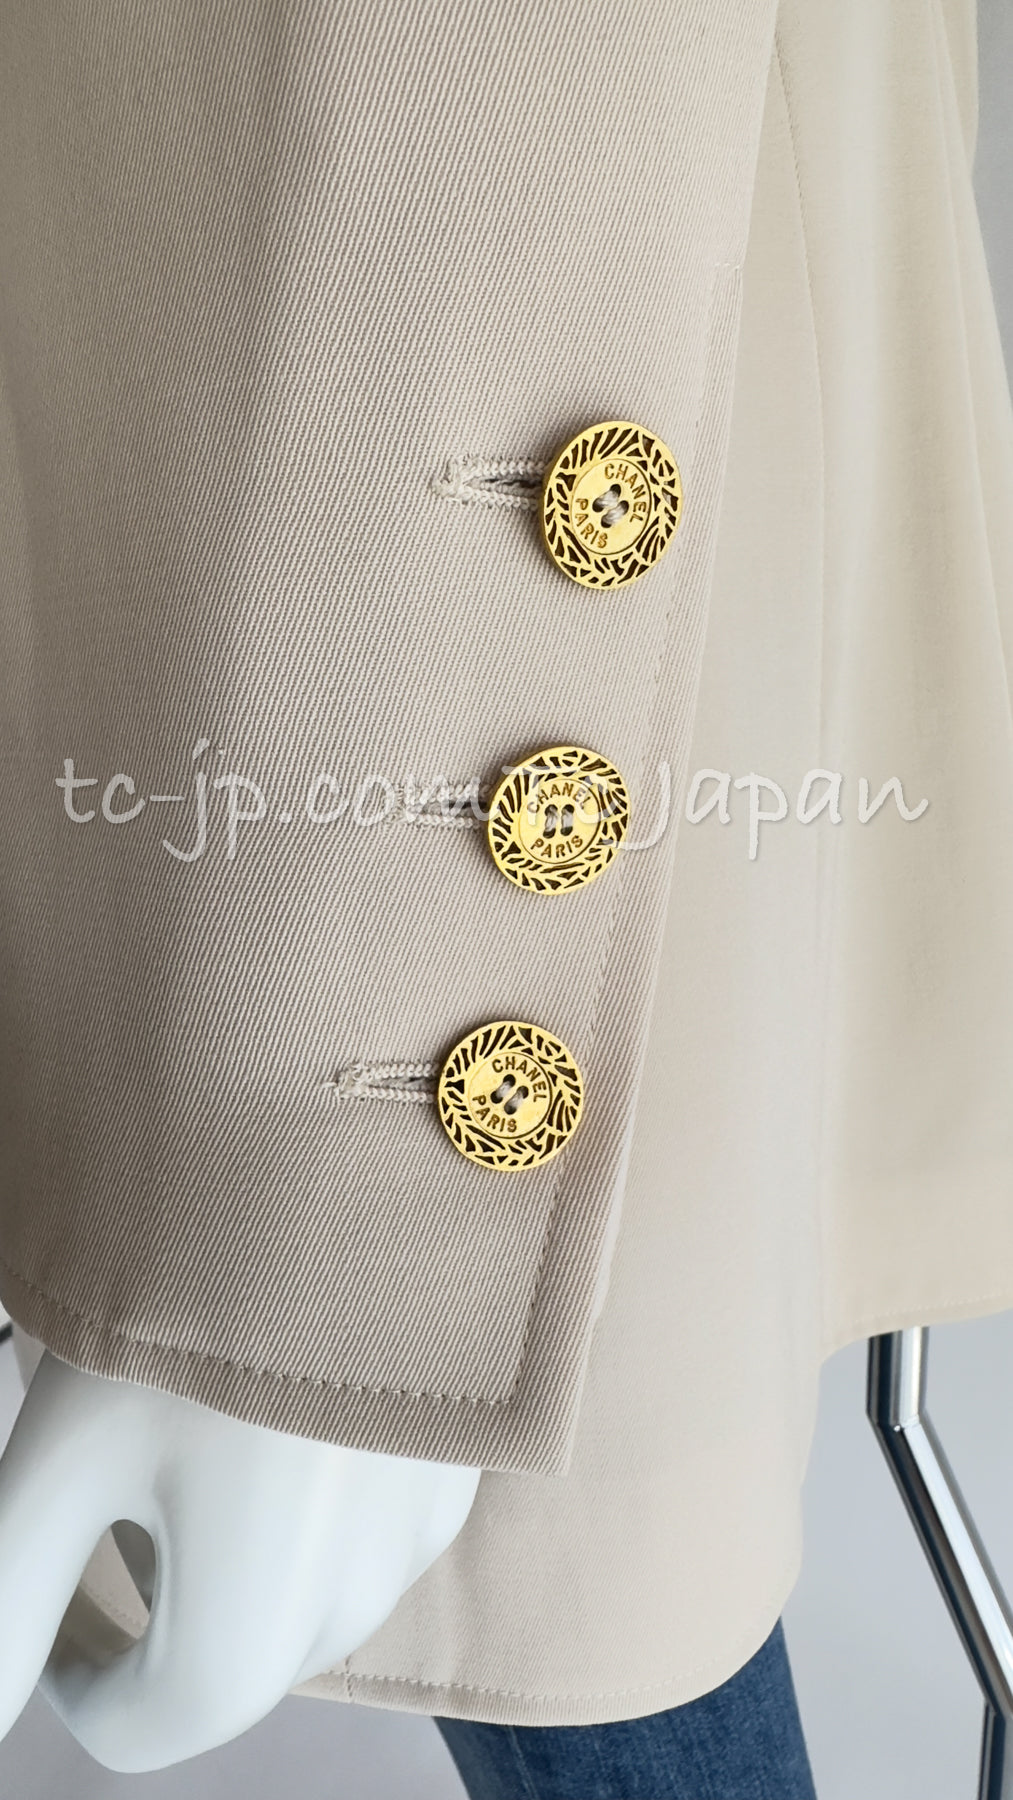 CHANEL 97S Vintage Beige Gold Buttons Wool Blazer Jacket 40 シャネル ヴィンテージ・ベージュ・ゴールド・ボタン・ウール・ブレザー・ジャケット 即発